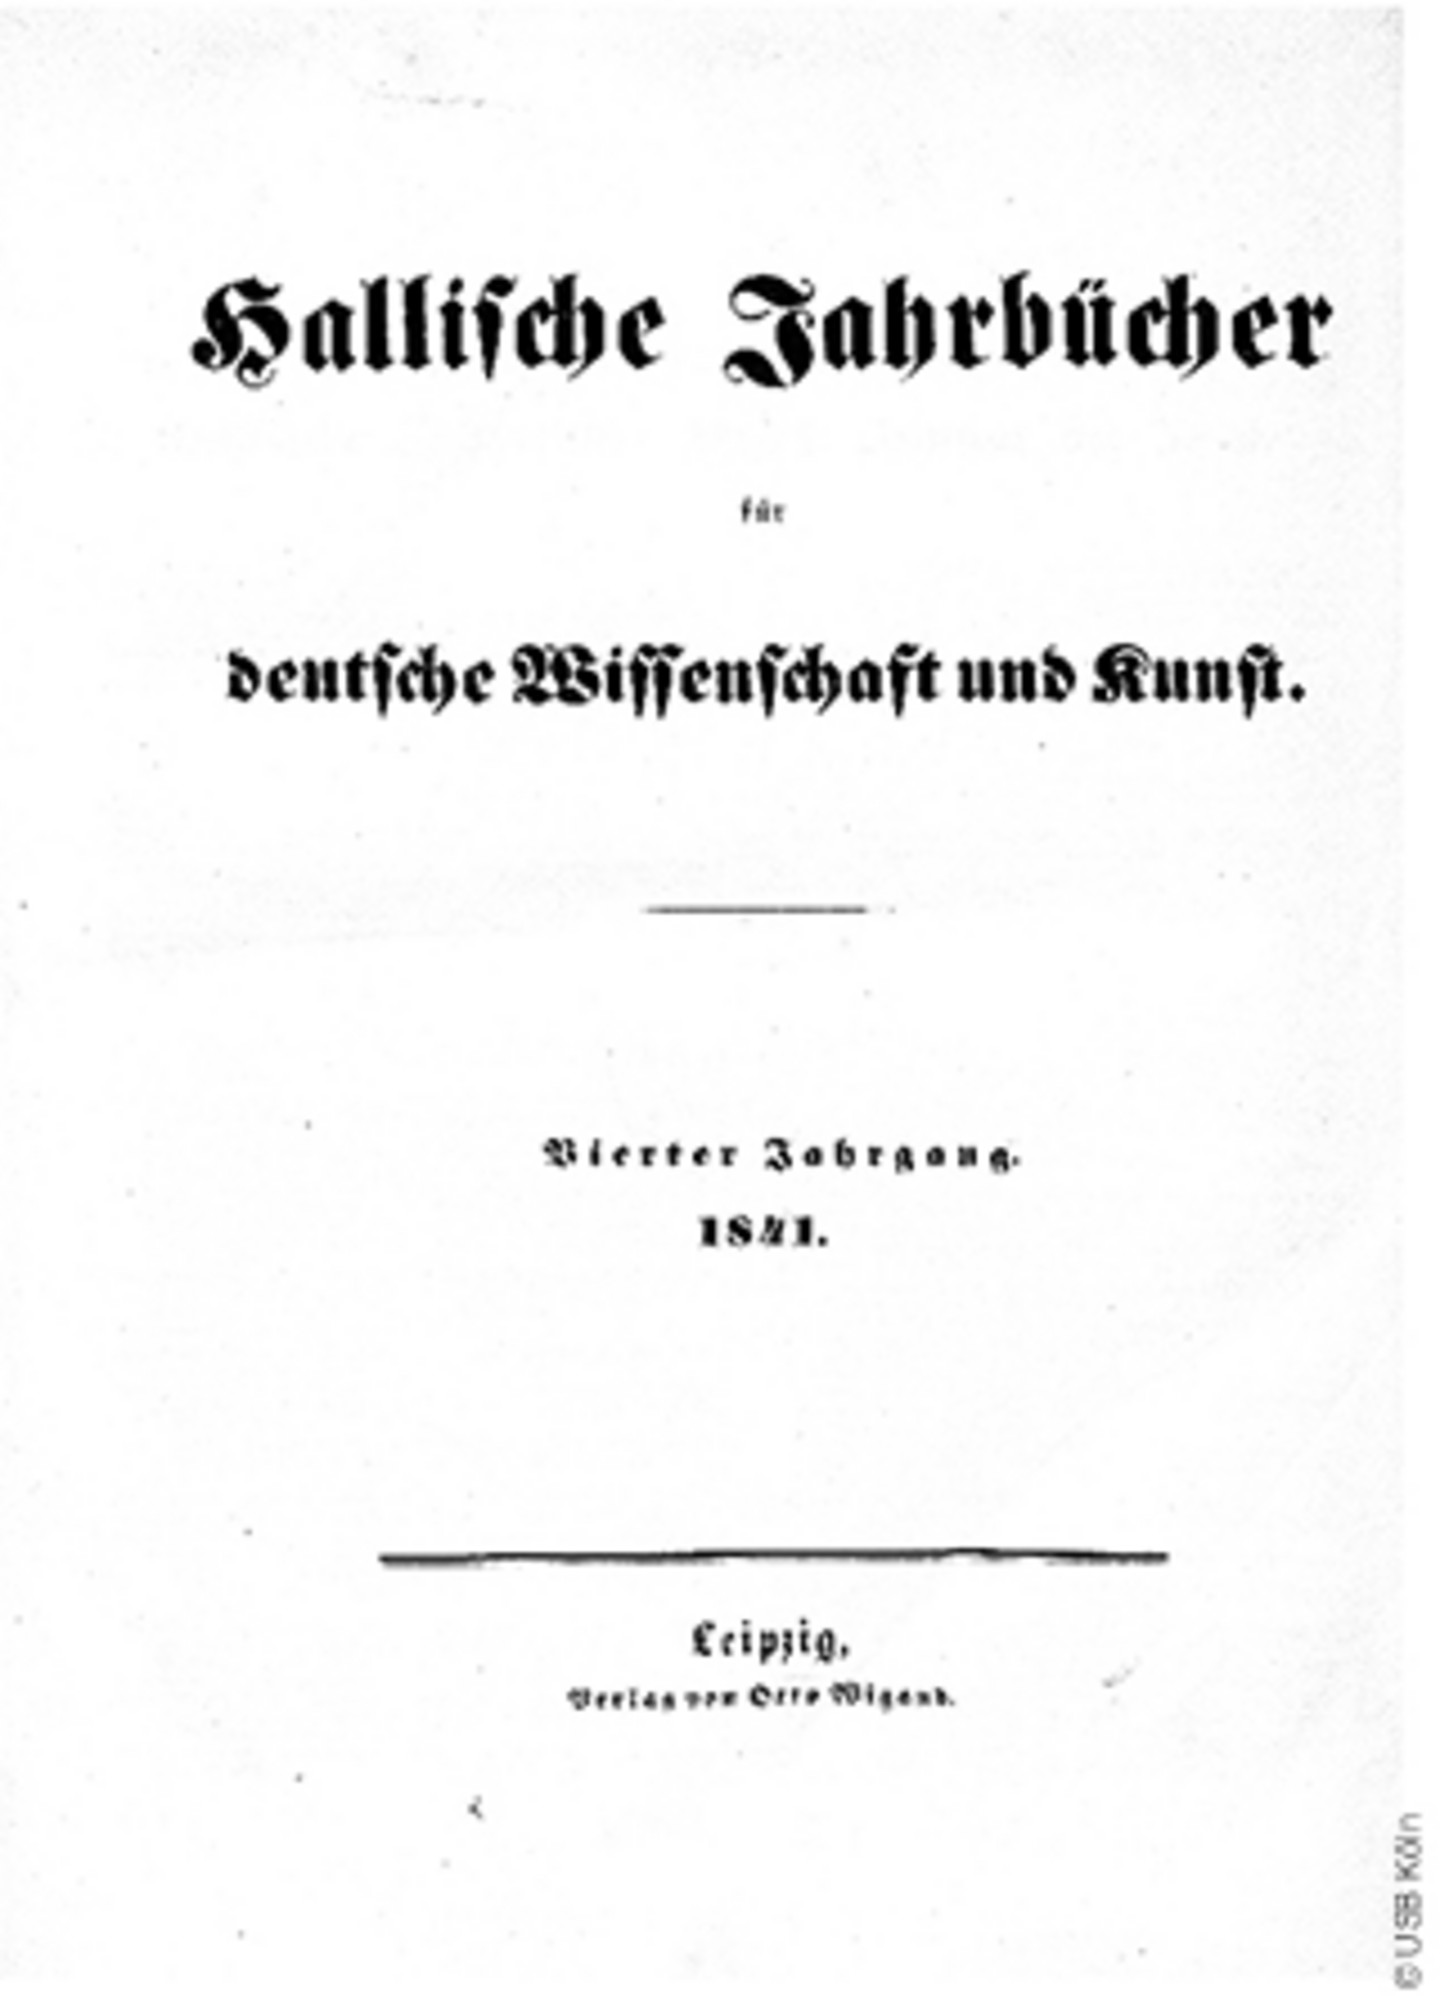 Titelbild der hallischen Jahrbücher aus dem Jahr 1841.